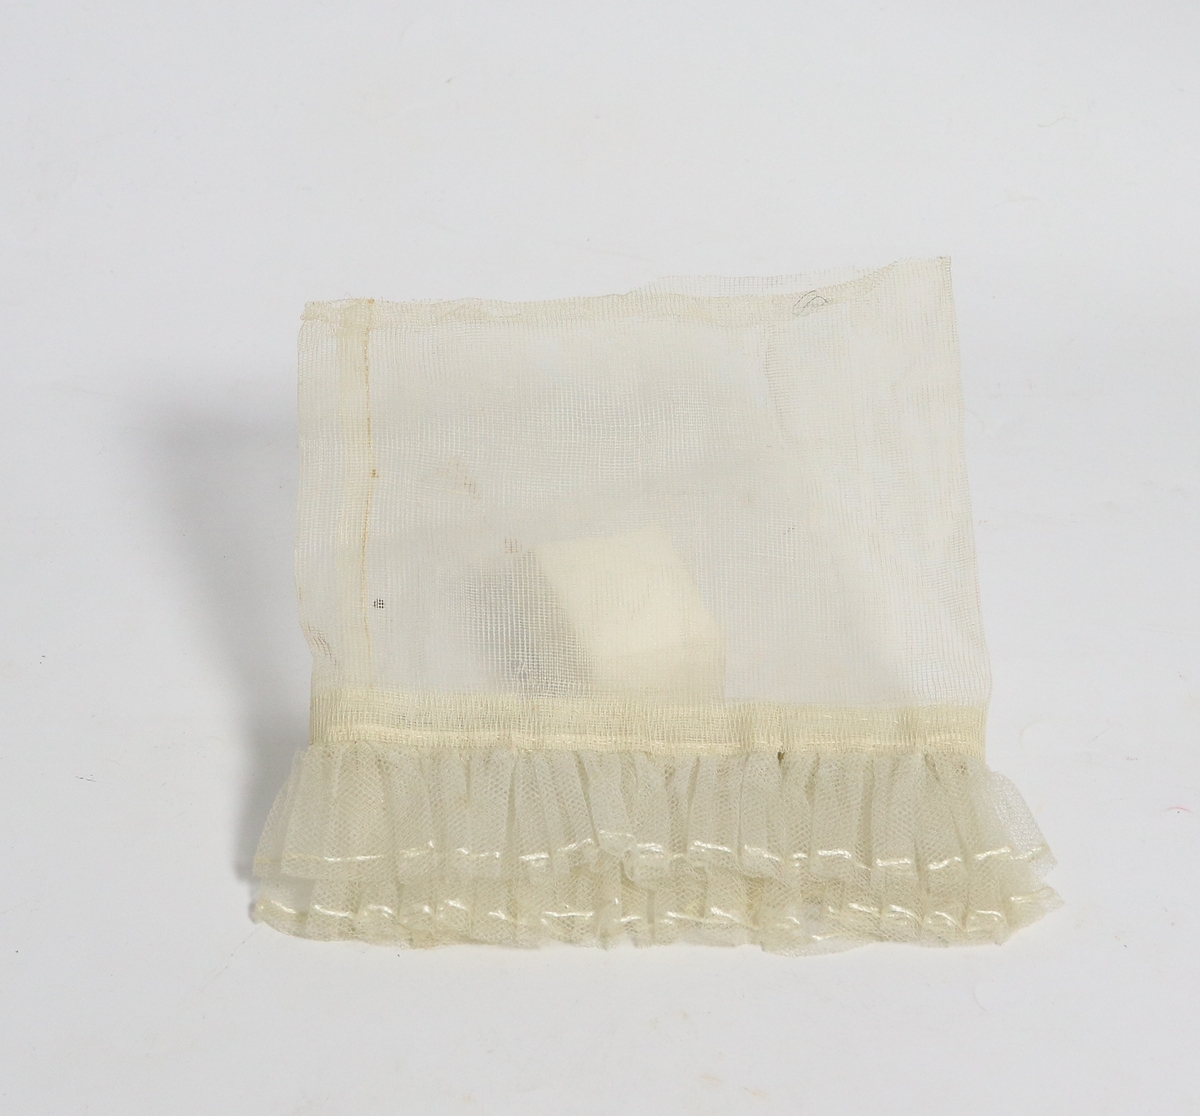 Hvit gjennomsiktig brudeutsyr av silke betsående av brudeslør, myrtekrans og kjolepynt.